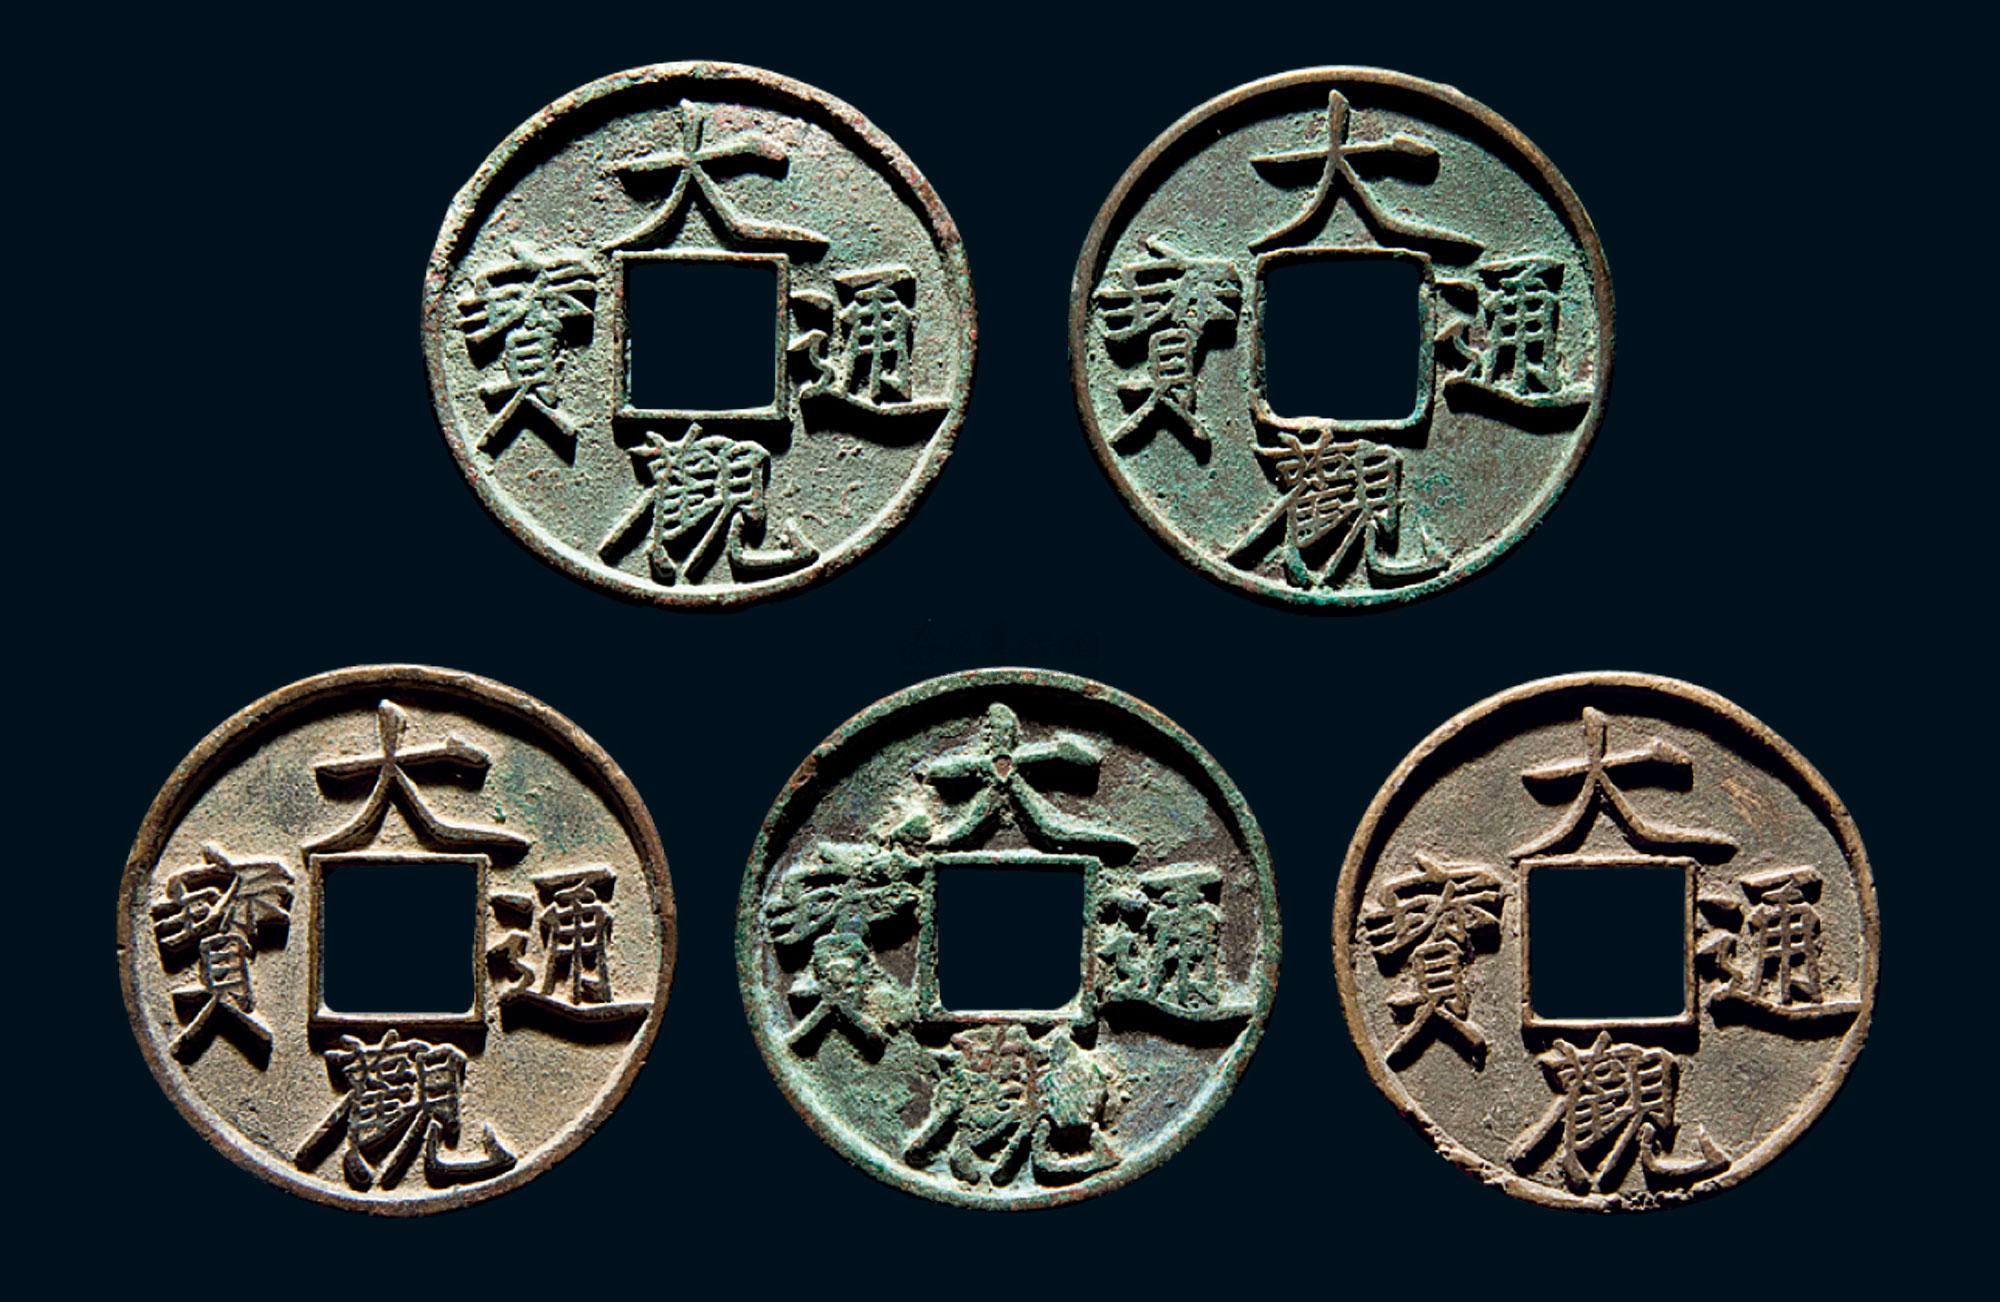 北宋庆历重宝铜钱 - 宋代 - 巨野博物馆